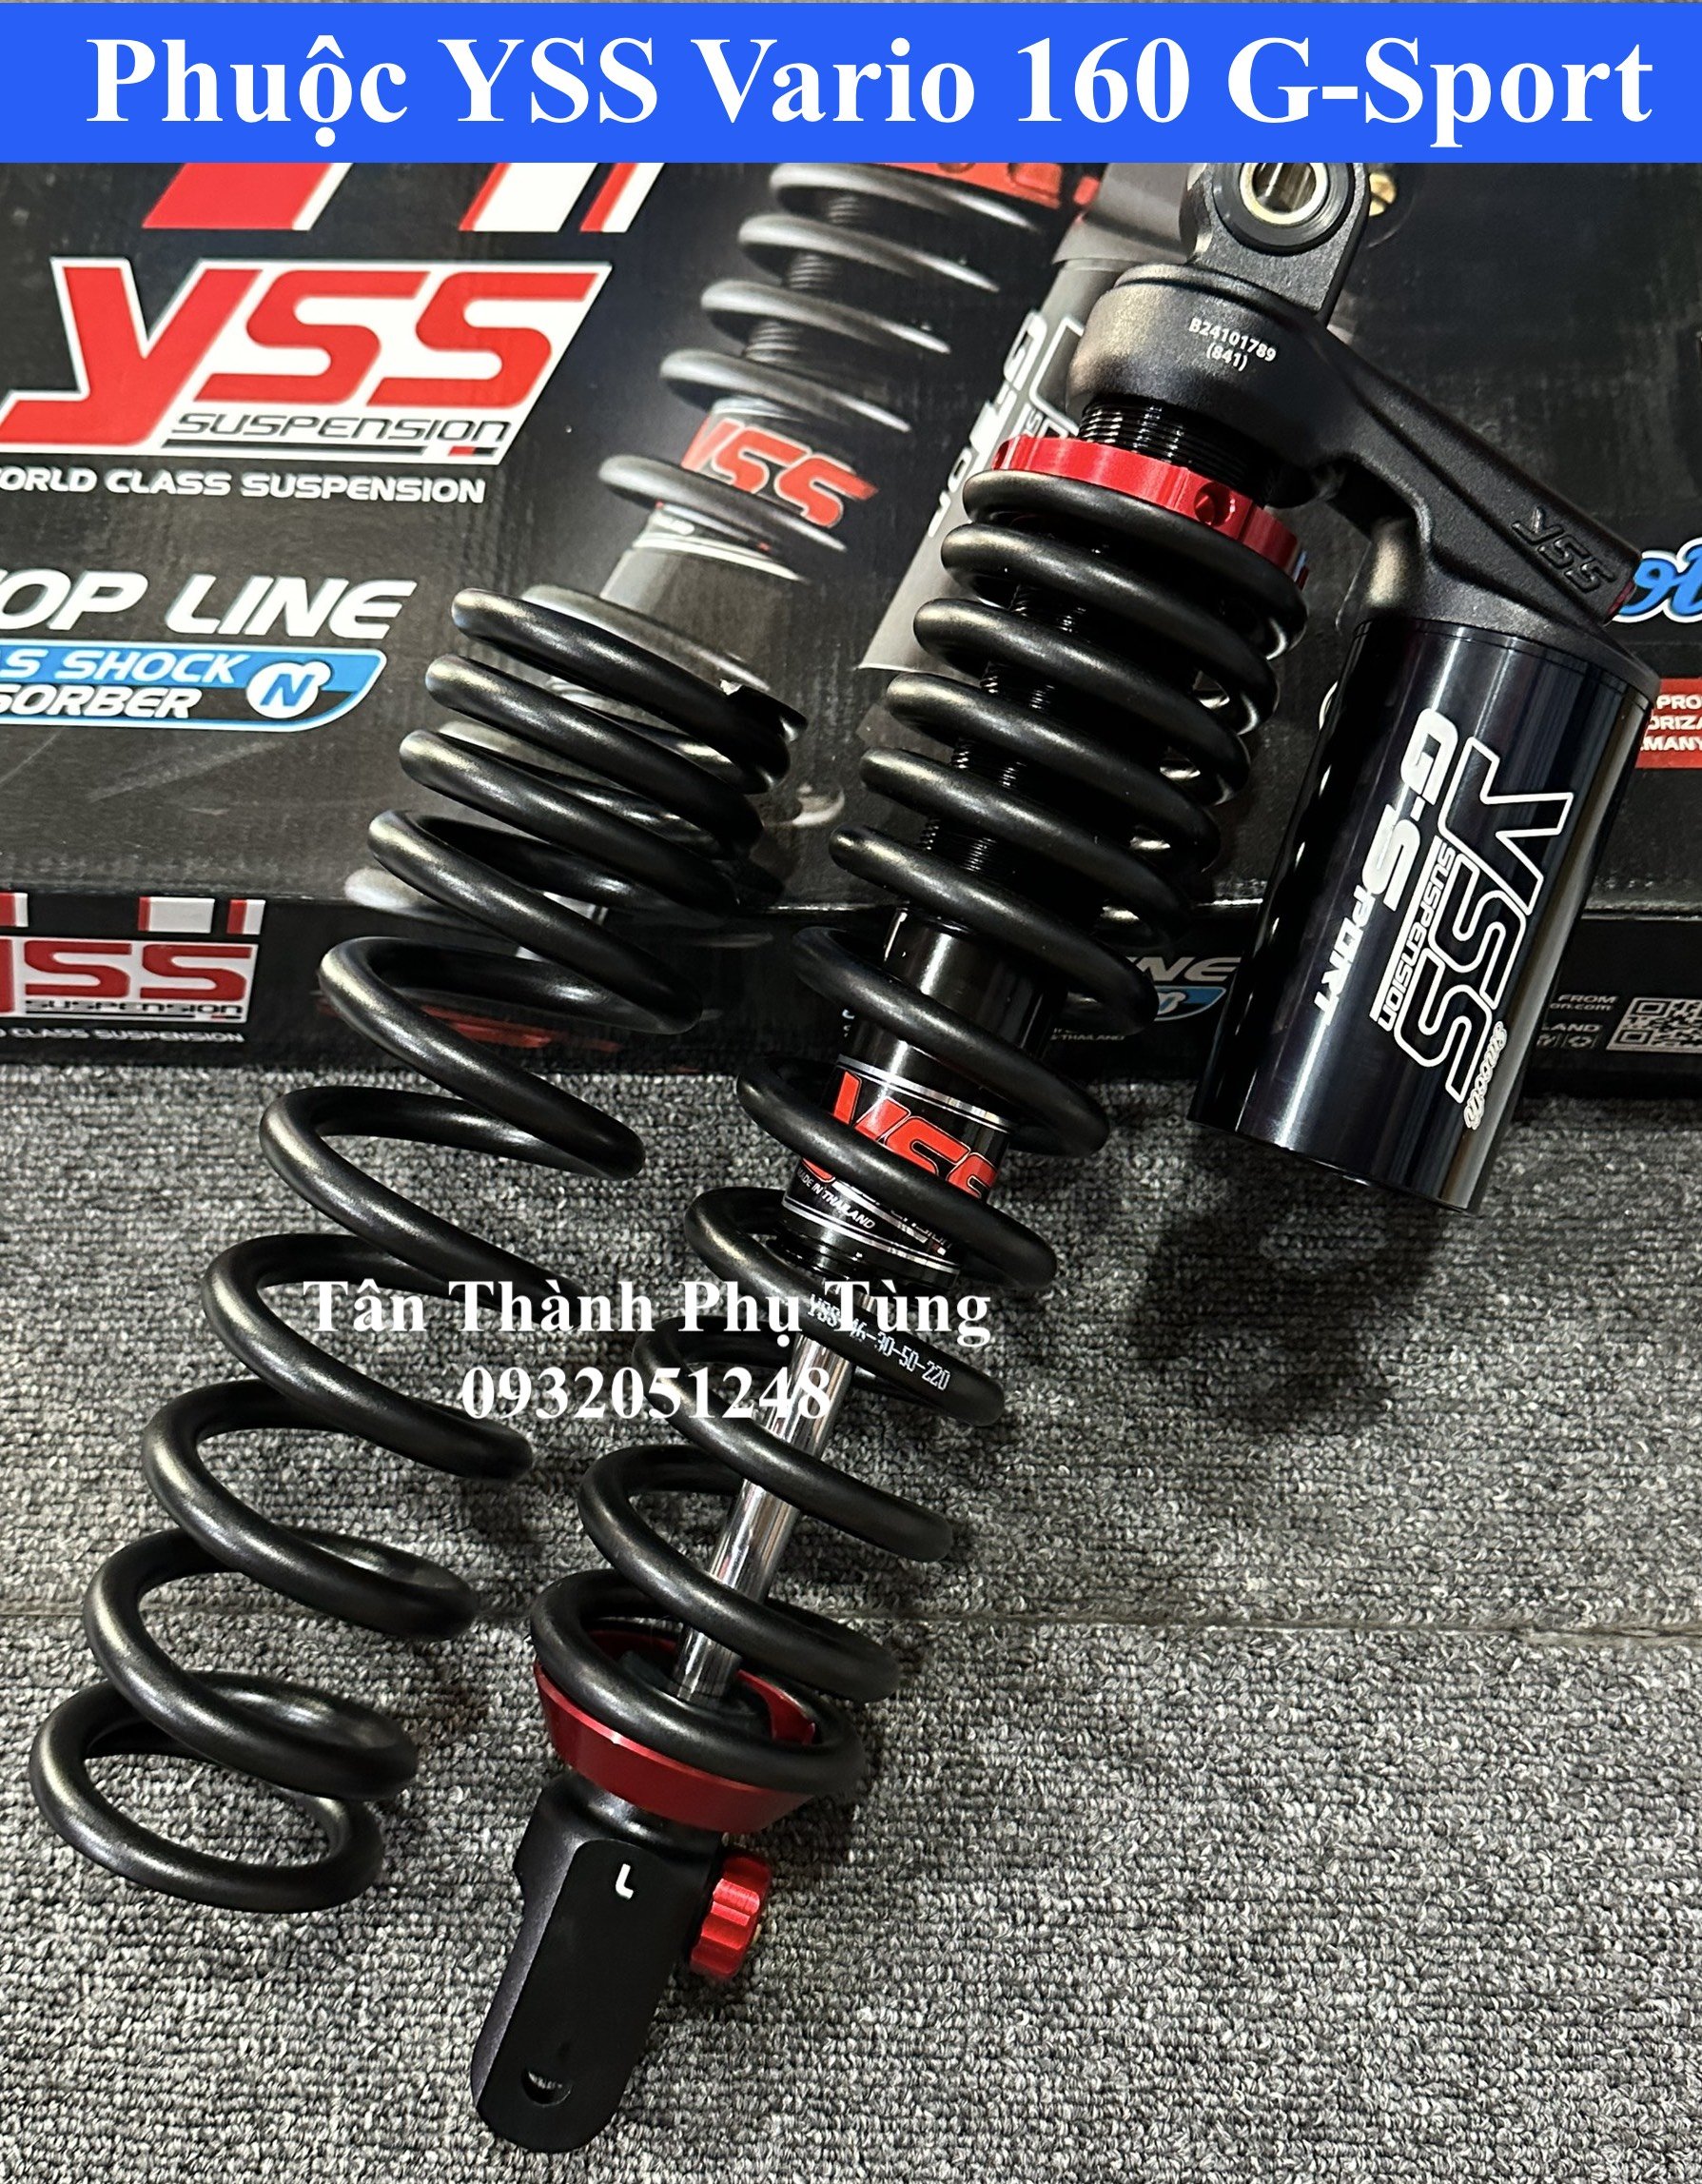 Phuộc YSS dành cho Vario 160 G-Sport Full đen-bảo hành 2 năm